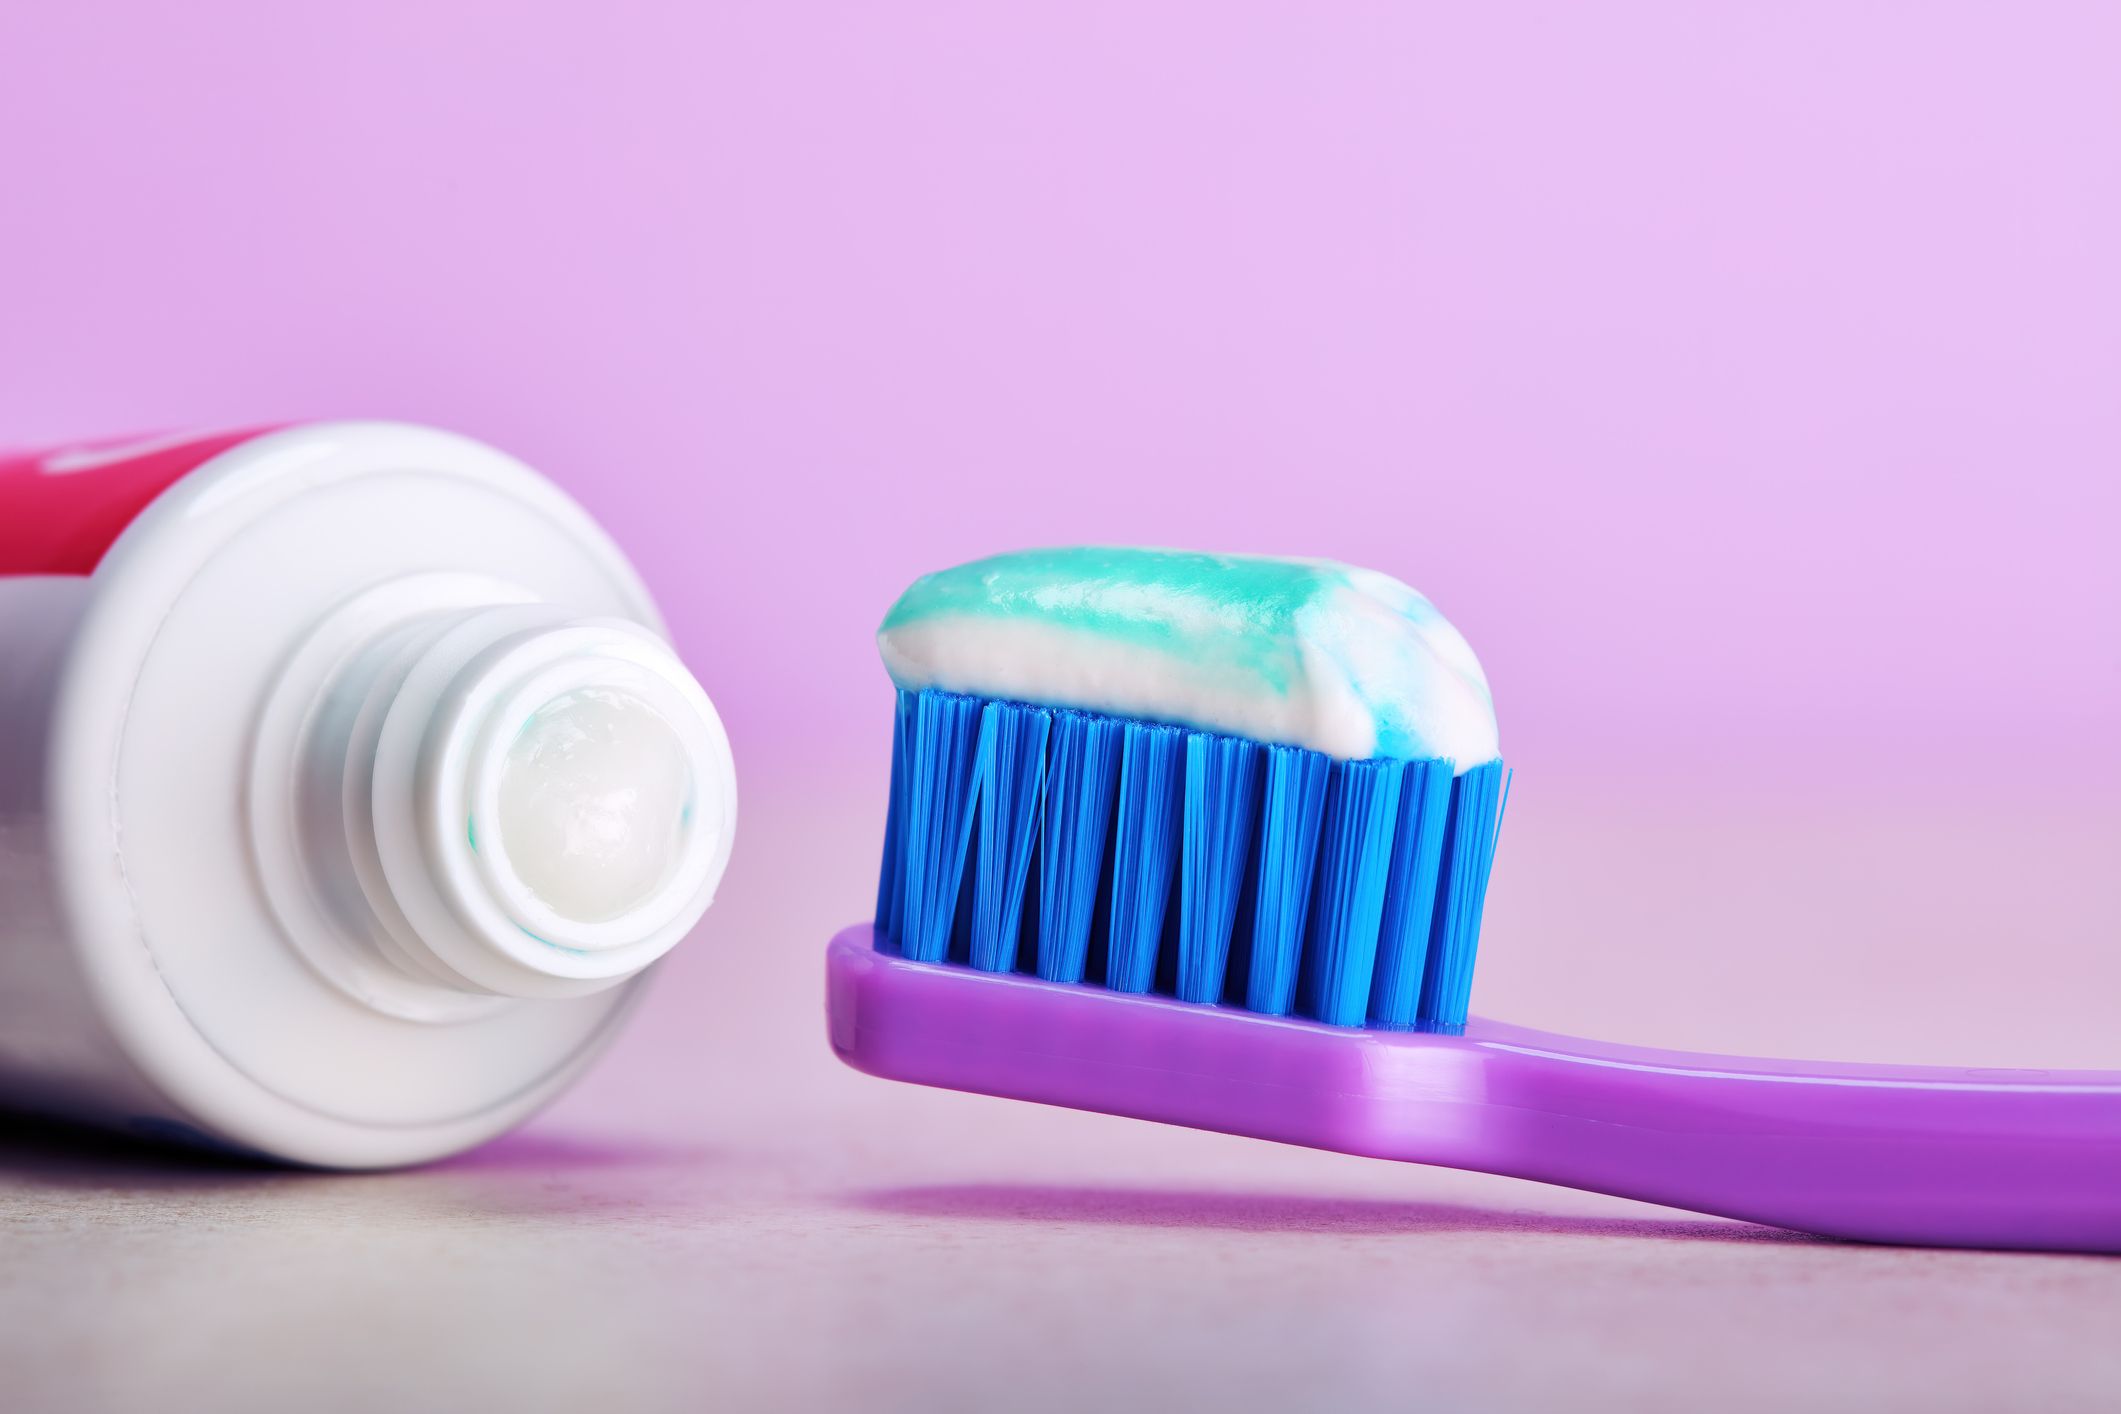 Fehler beim Zähne putzen: Falsche Zahnpasta verwenden